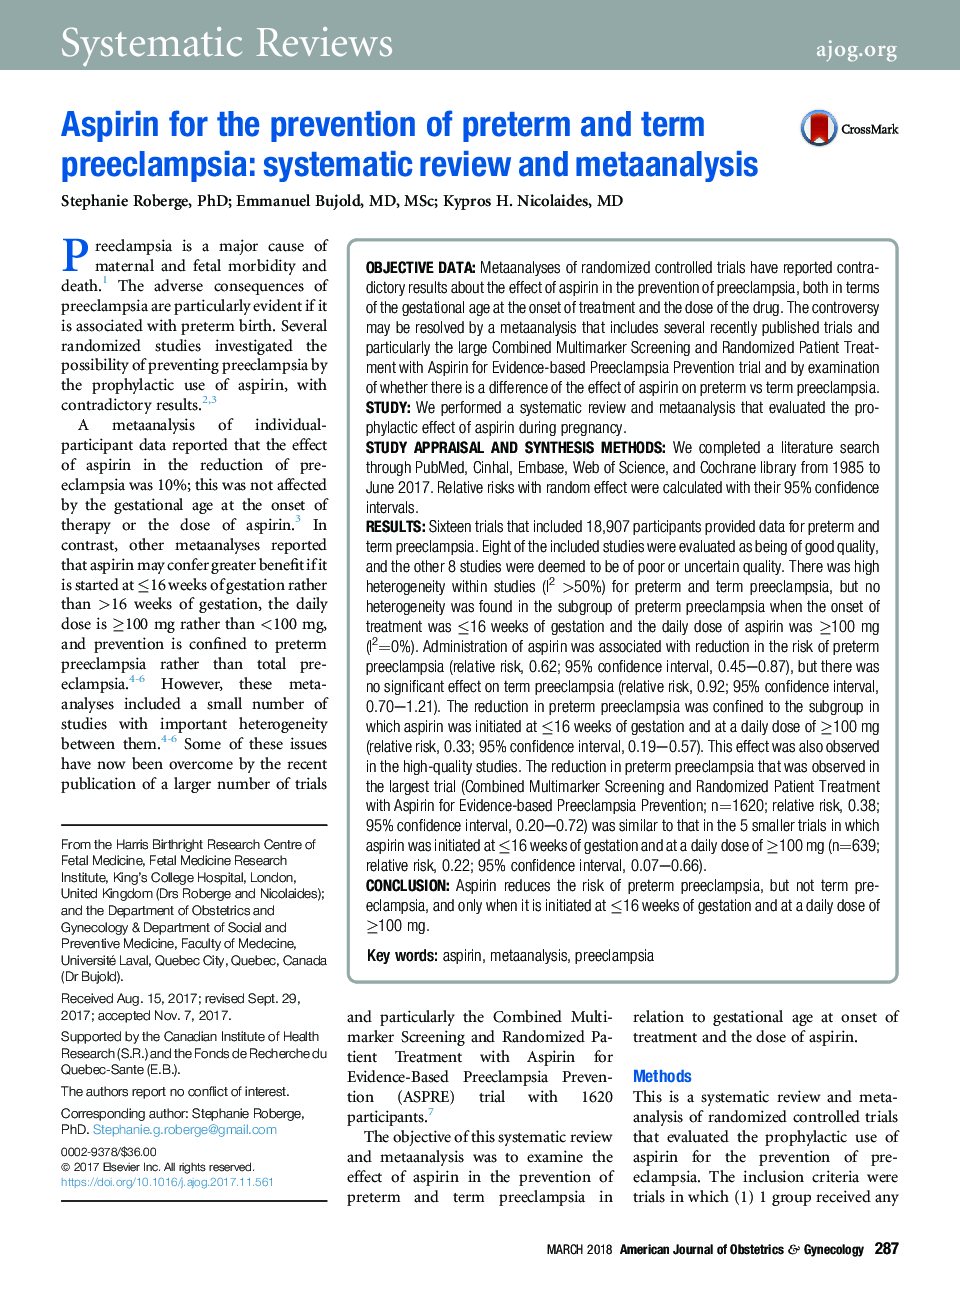 آسپرین برای جلوگیری از پره اکلامپسی پیش از زایمان و مدت: بررسی منظم و متاآنالیز 